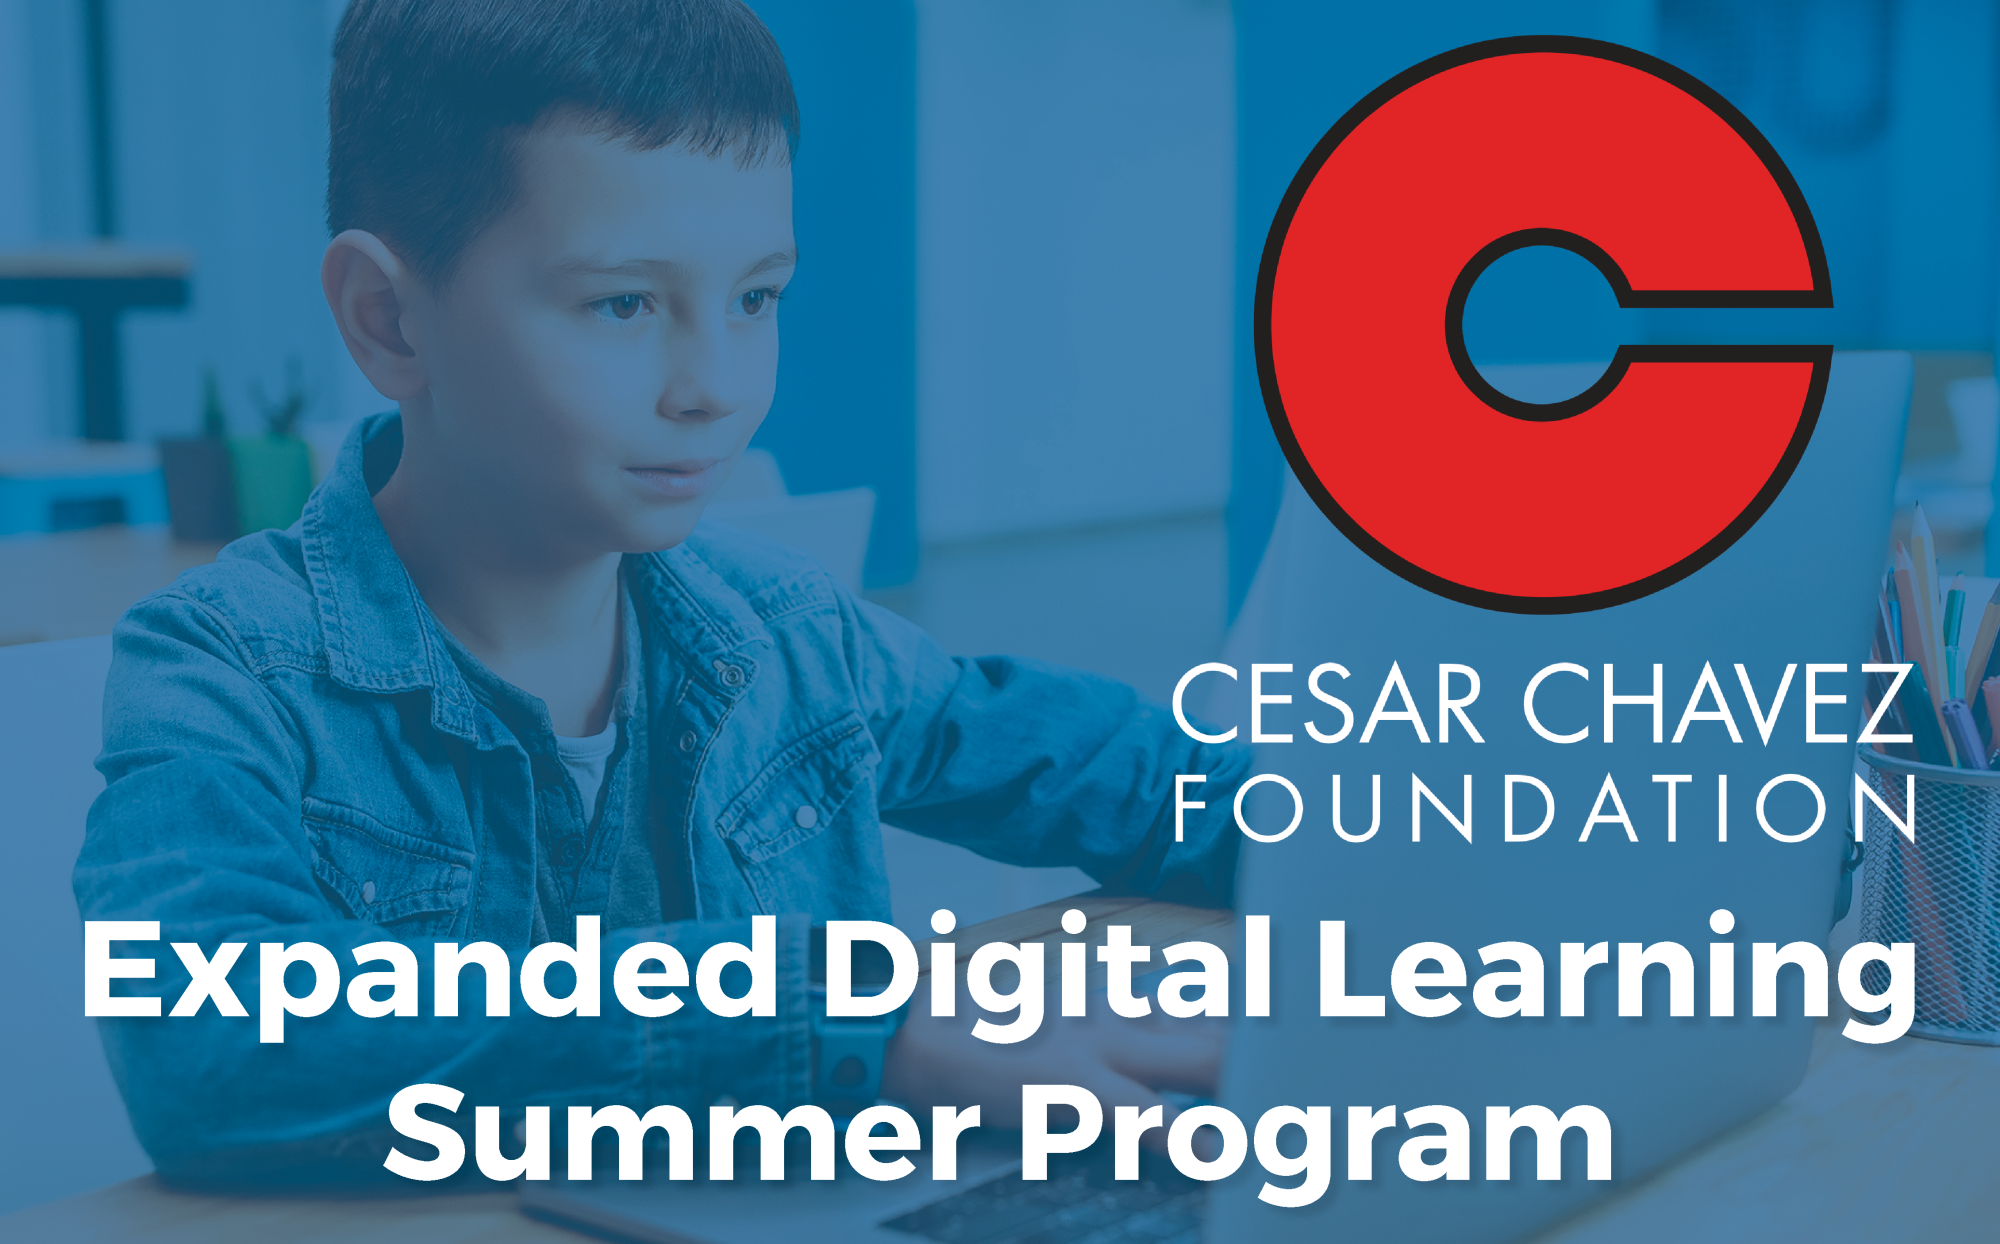 Cesar Chavez Foundation, Expanded Digital Learning Summer Program